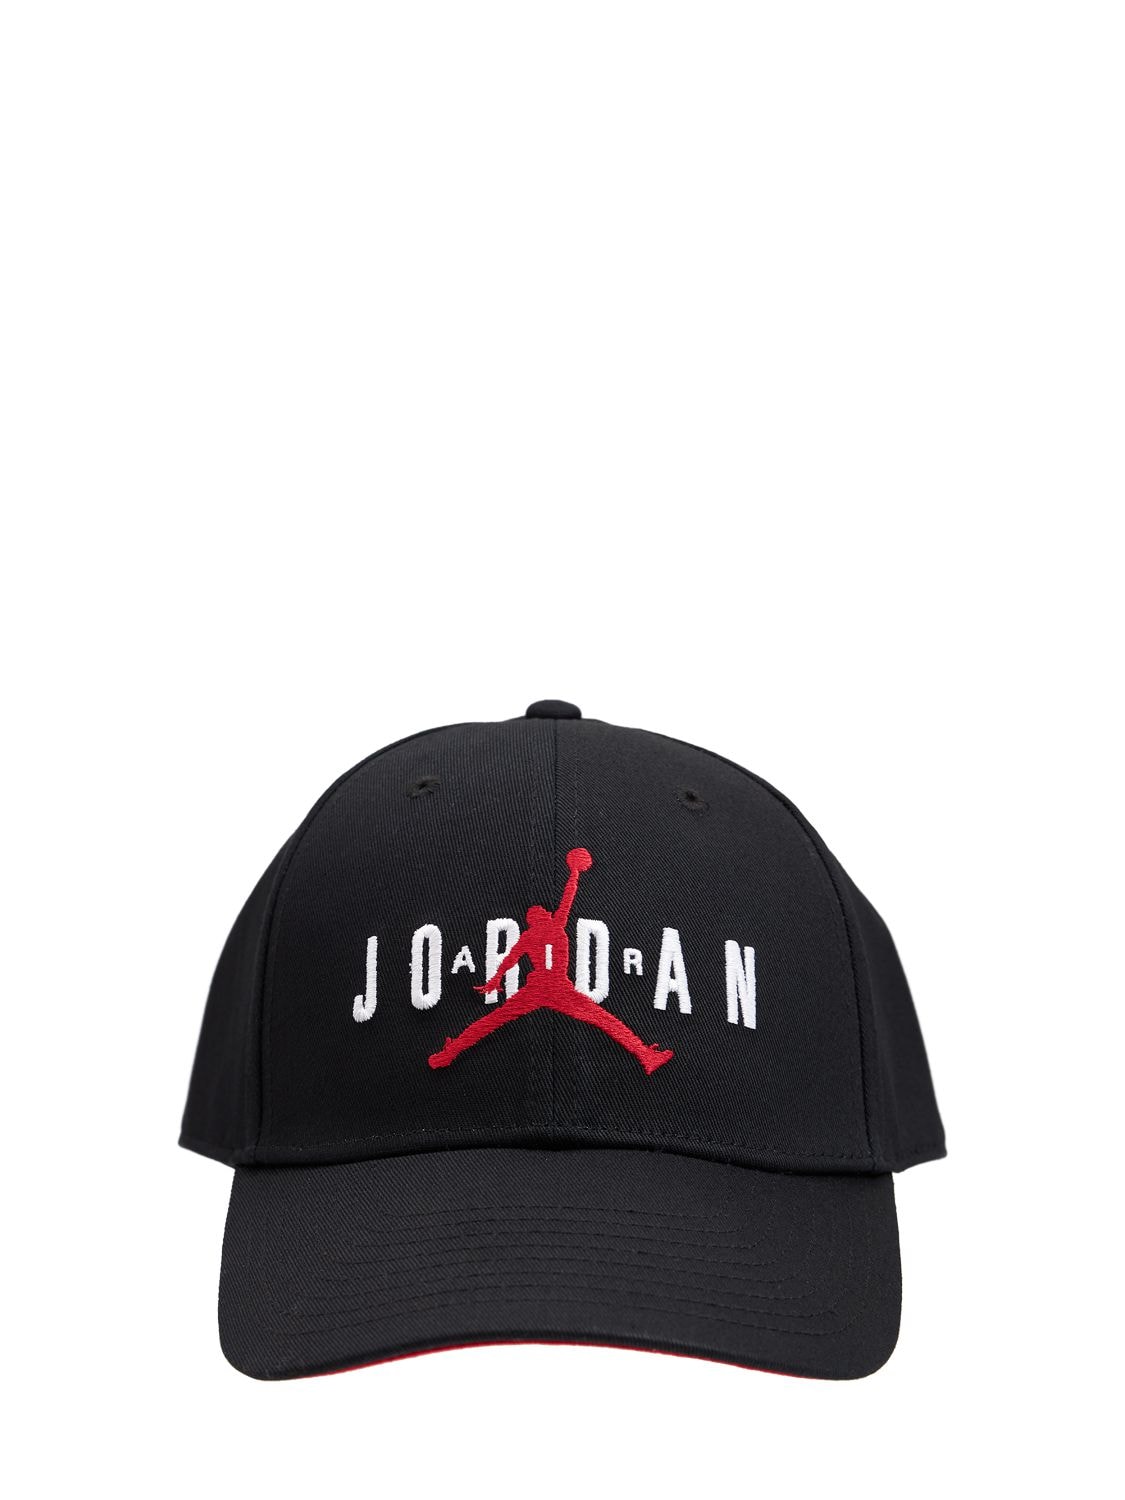 NIKE Air Jordan Cap for Women